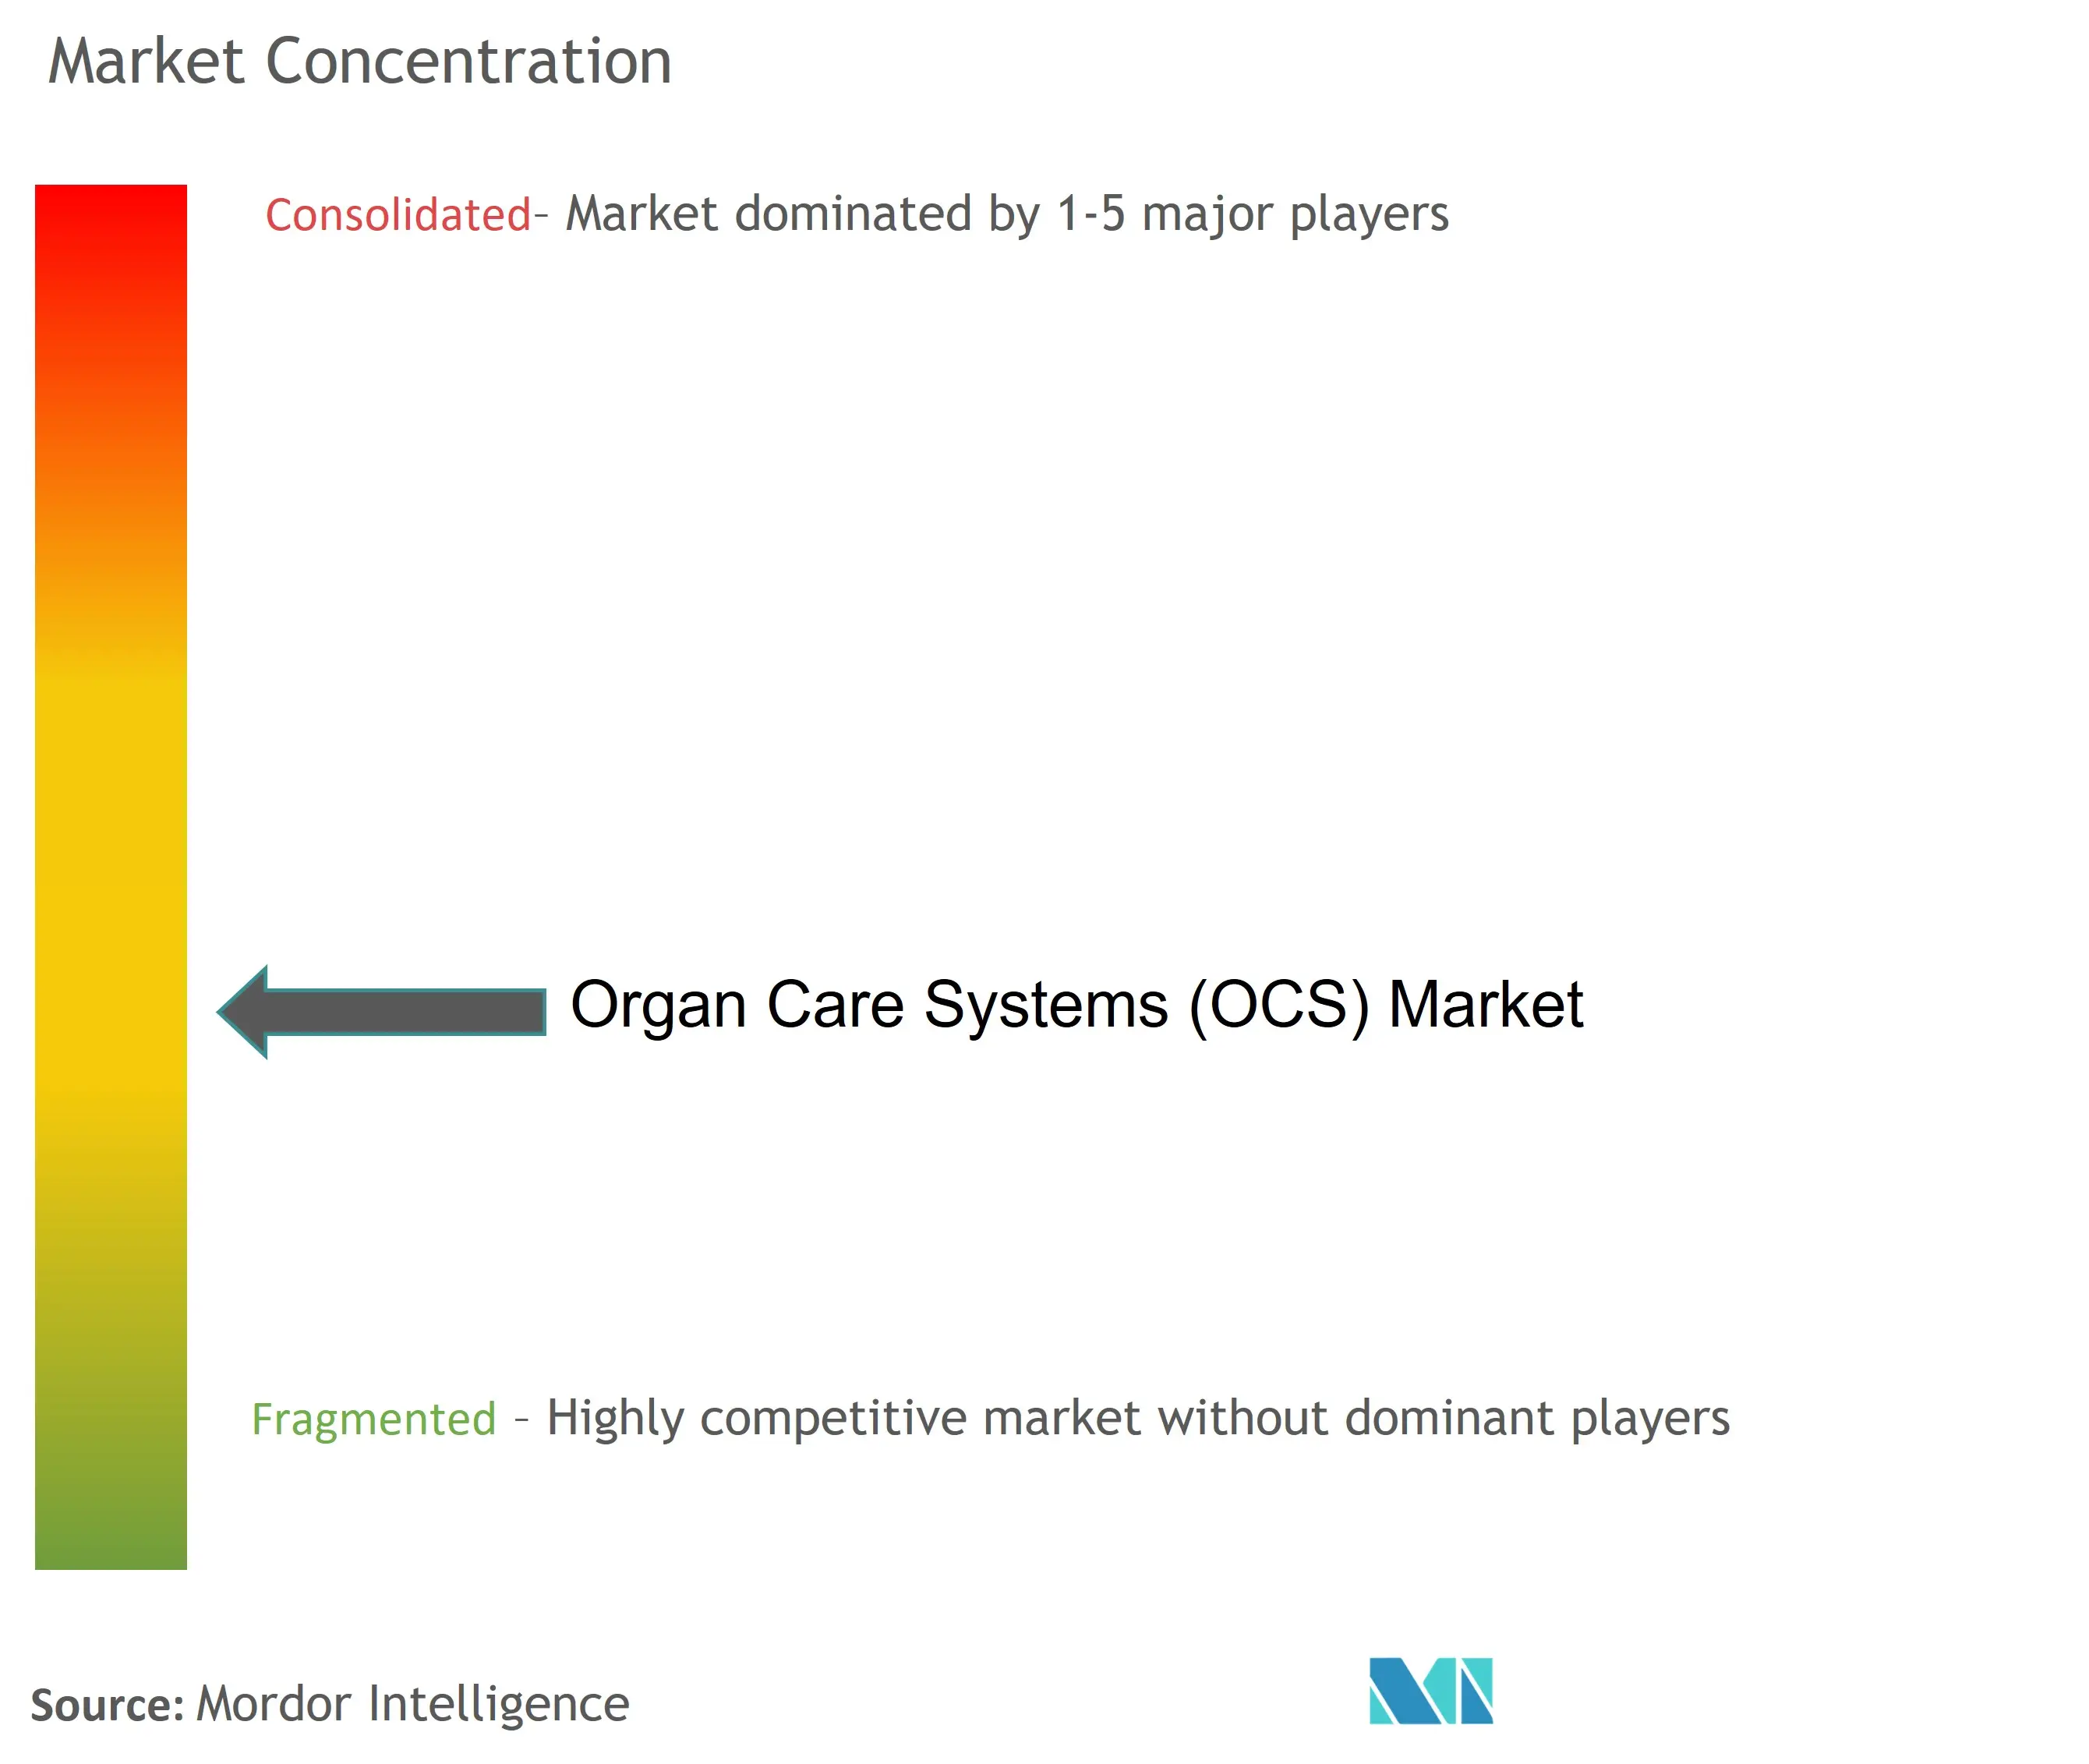 臓器ケアシステム (OCS)市場集中度